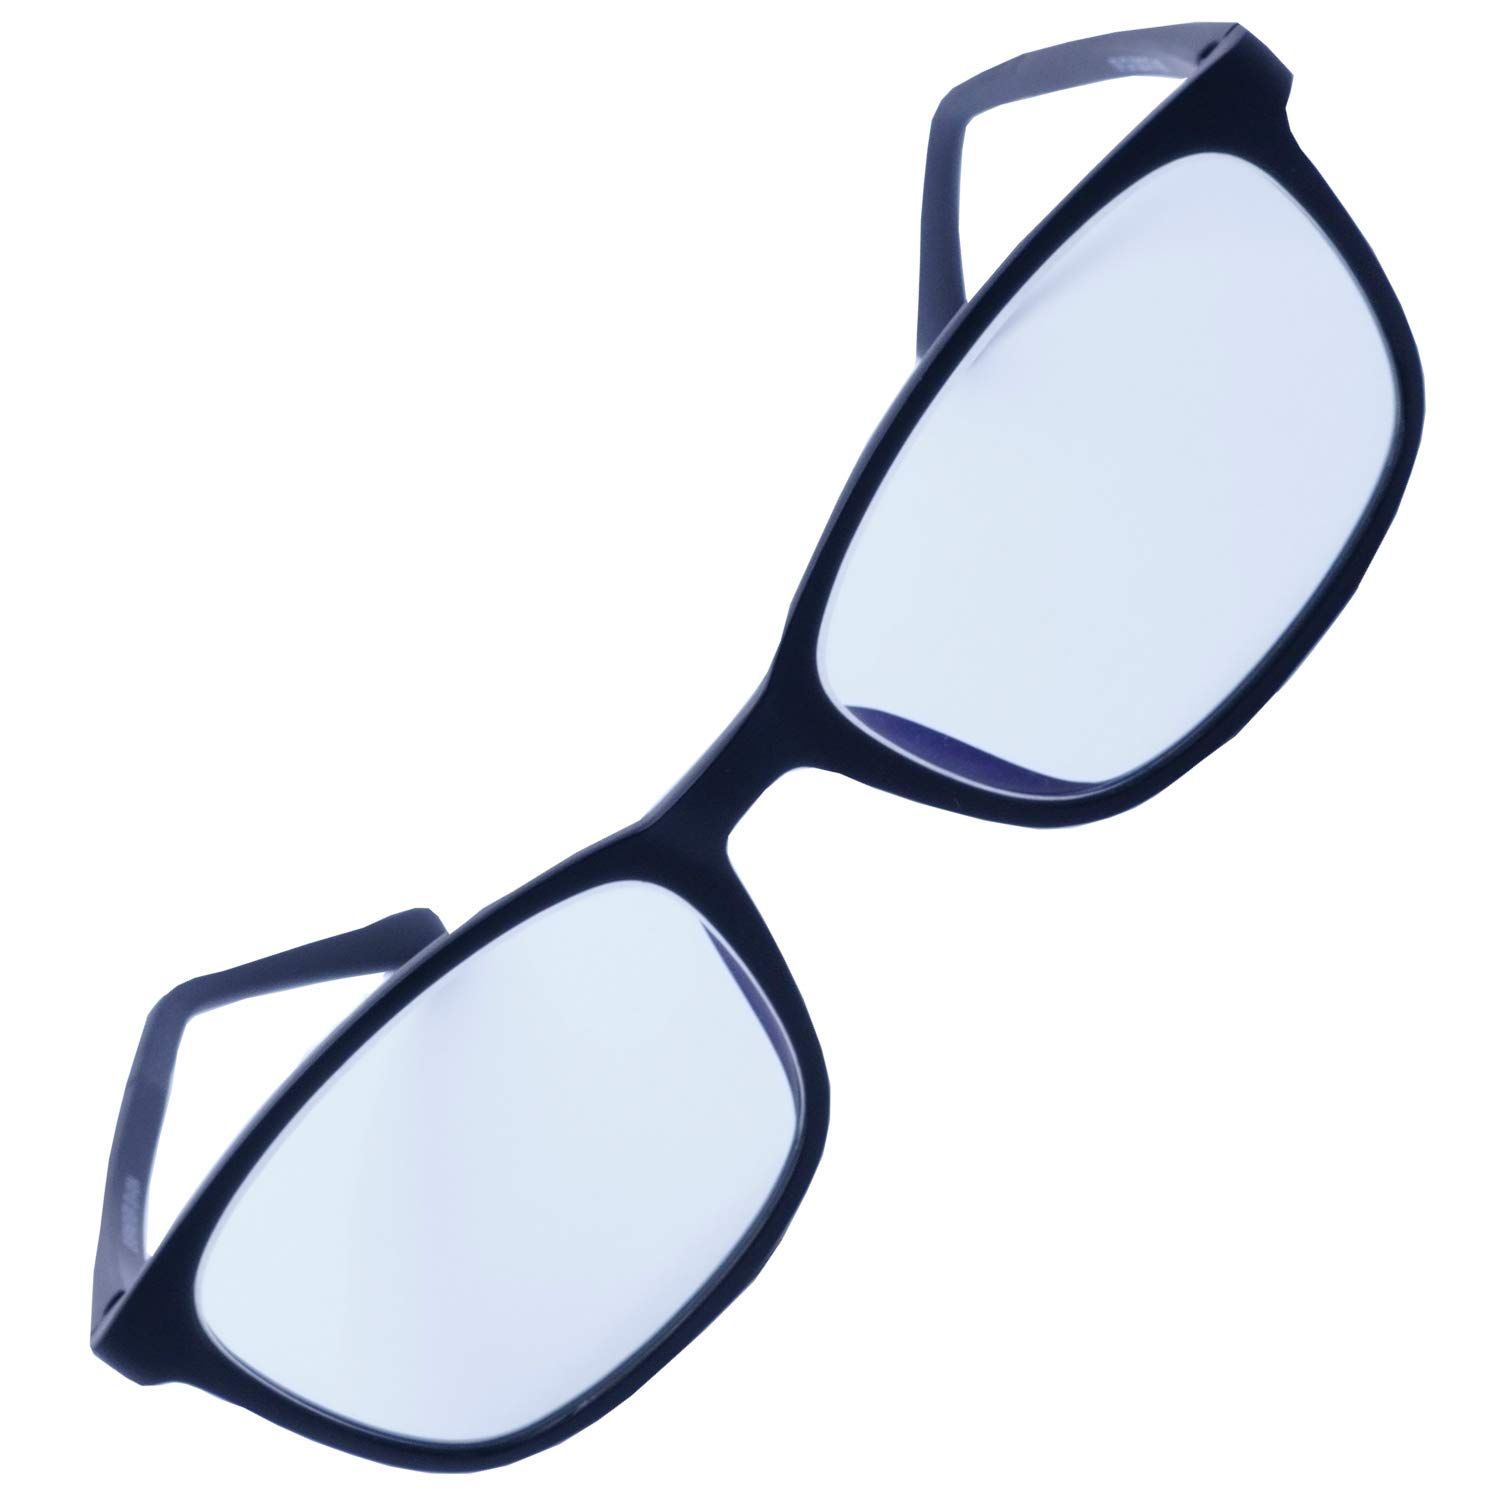 人気商品】小さい 小さめ スクエア おしゃれ 細い メンズ おしゃれ パソコン用メガネ ブルーライトカットメガネ uvカット pcメガネ  ちゃんとしたPCメガネやや小さめ～ふつうサイズ EV4-PC-V3 EVERNEVER